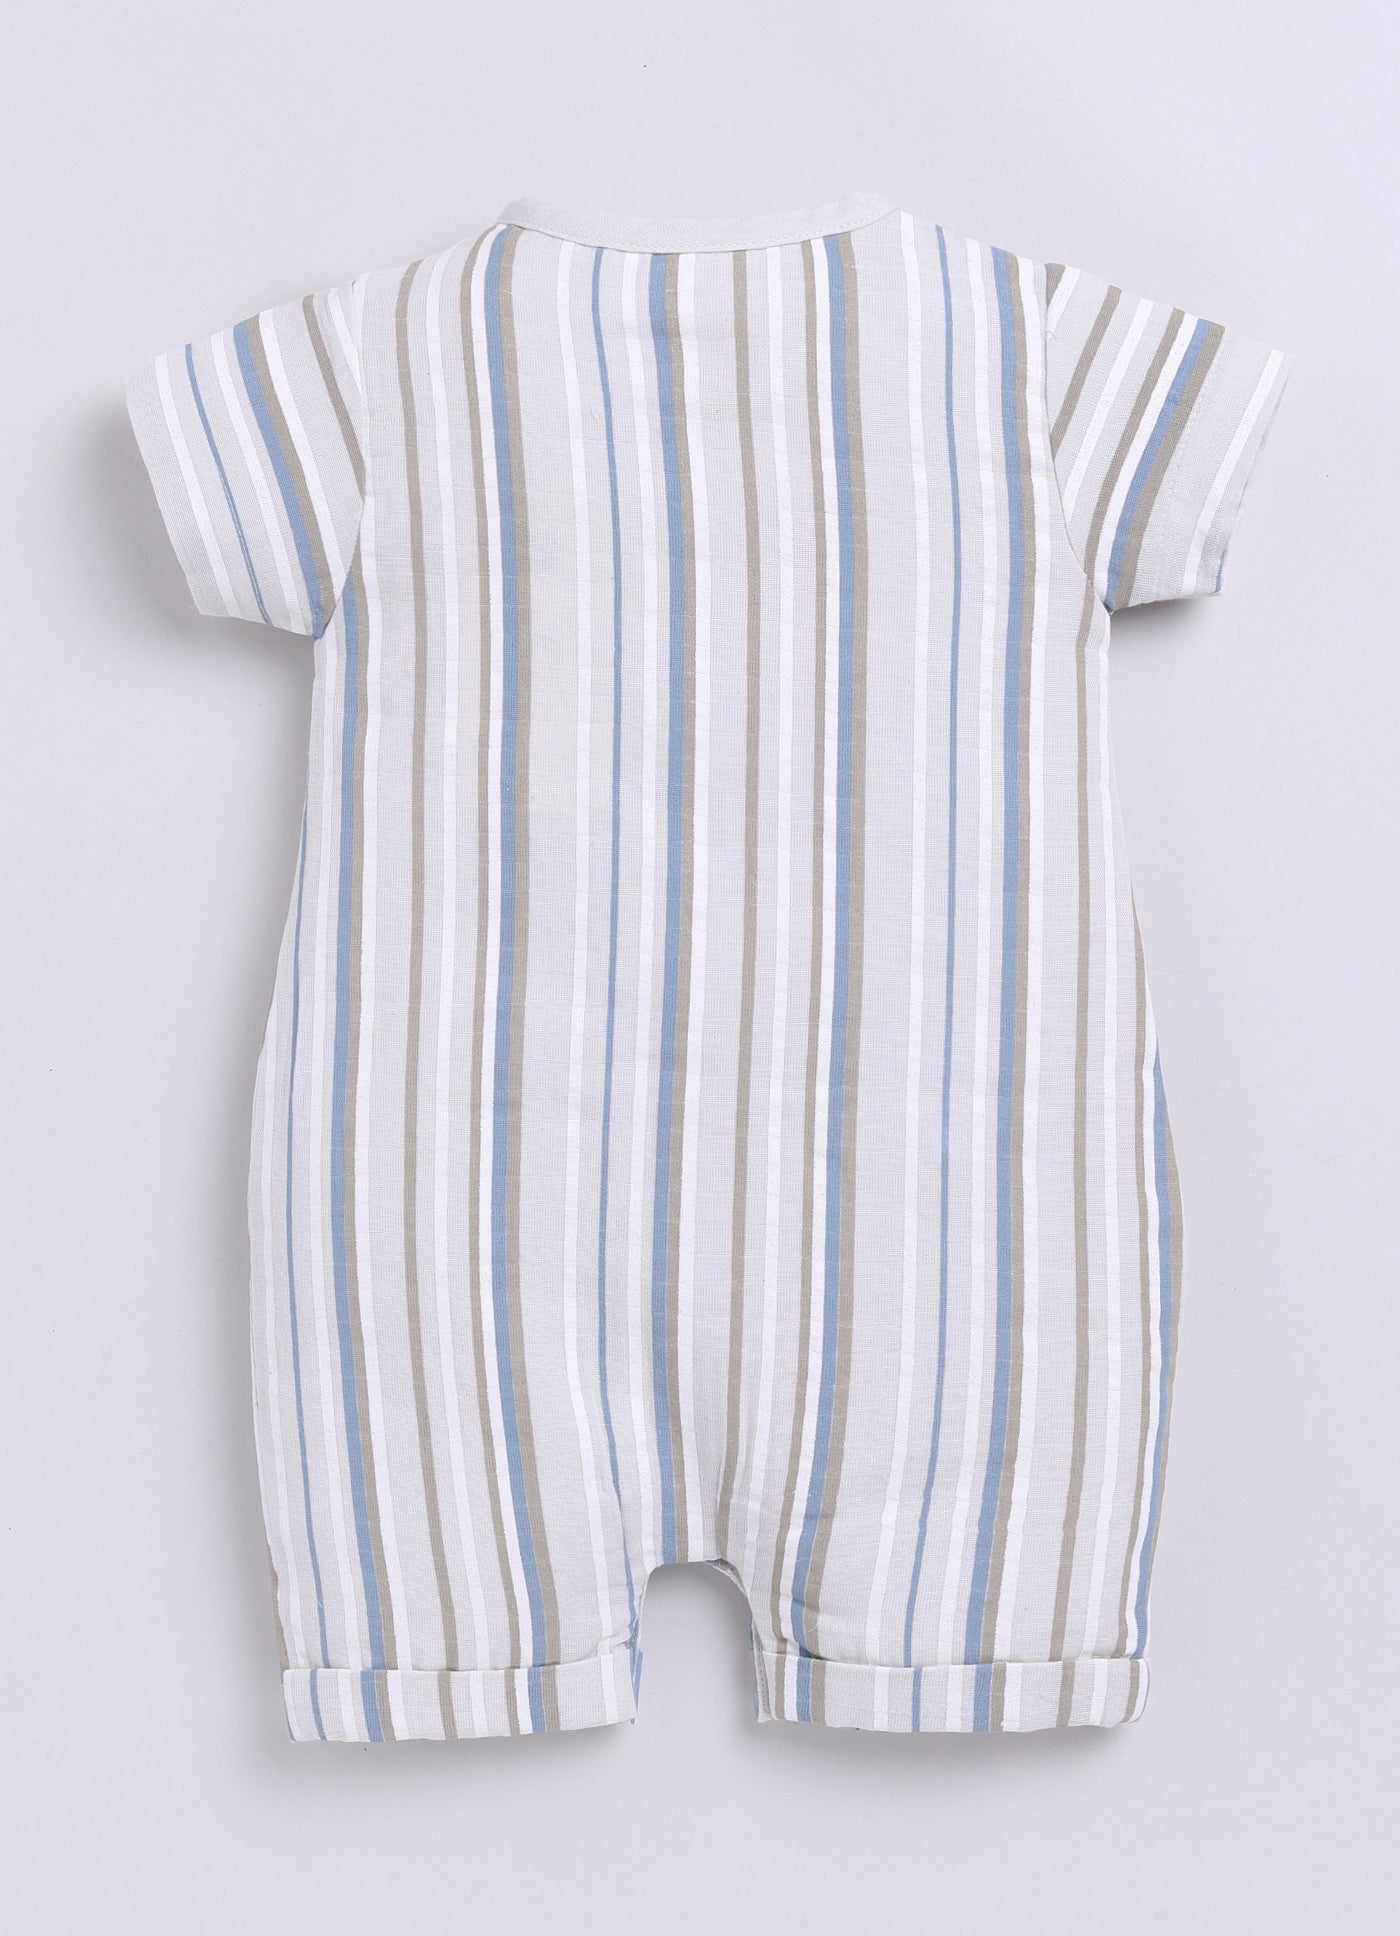 Multi Color Striped Baby Boy Half Sleeves Romper-BEIGE